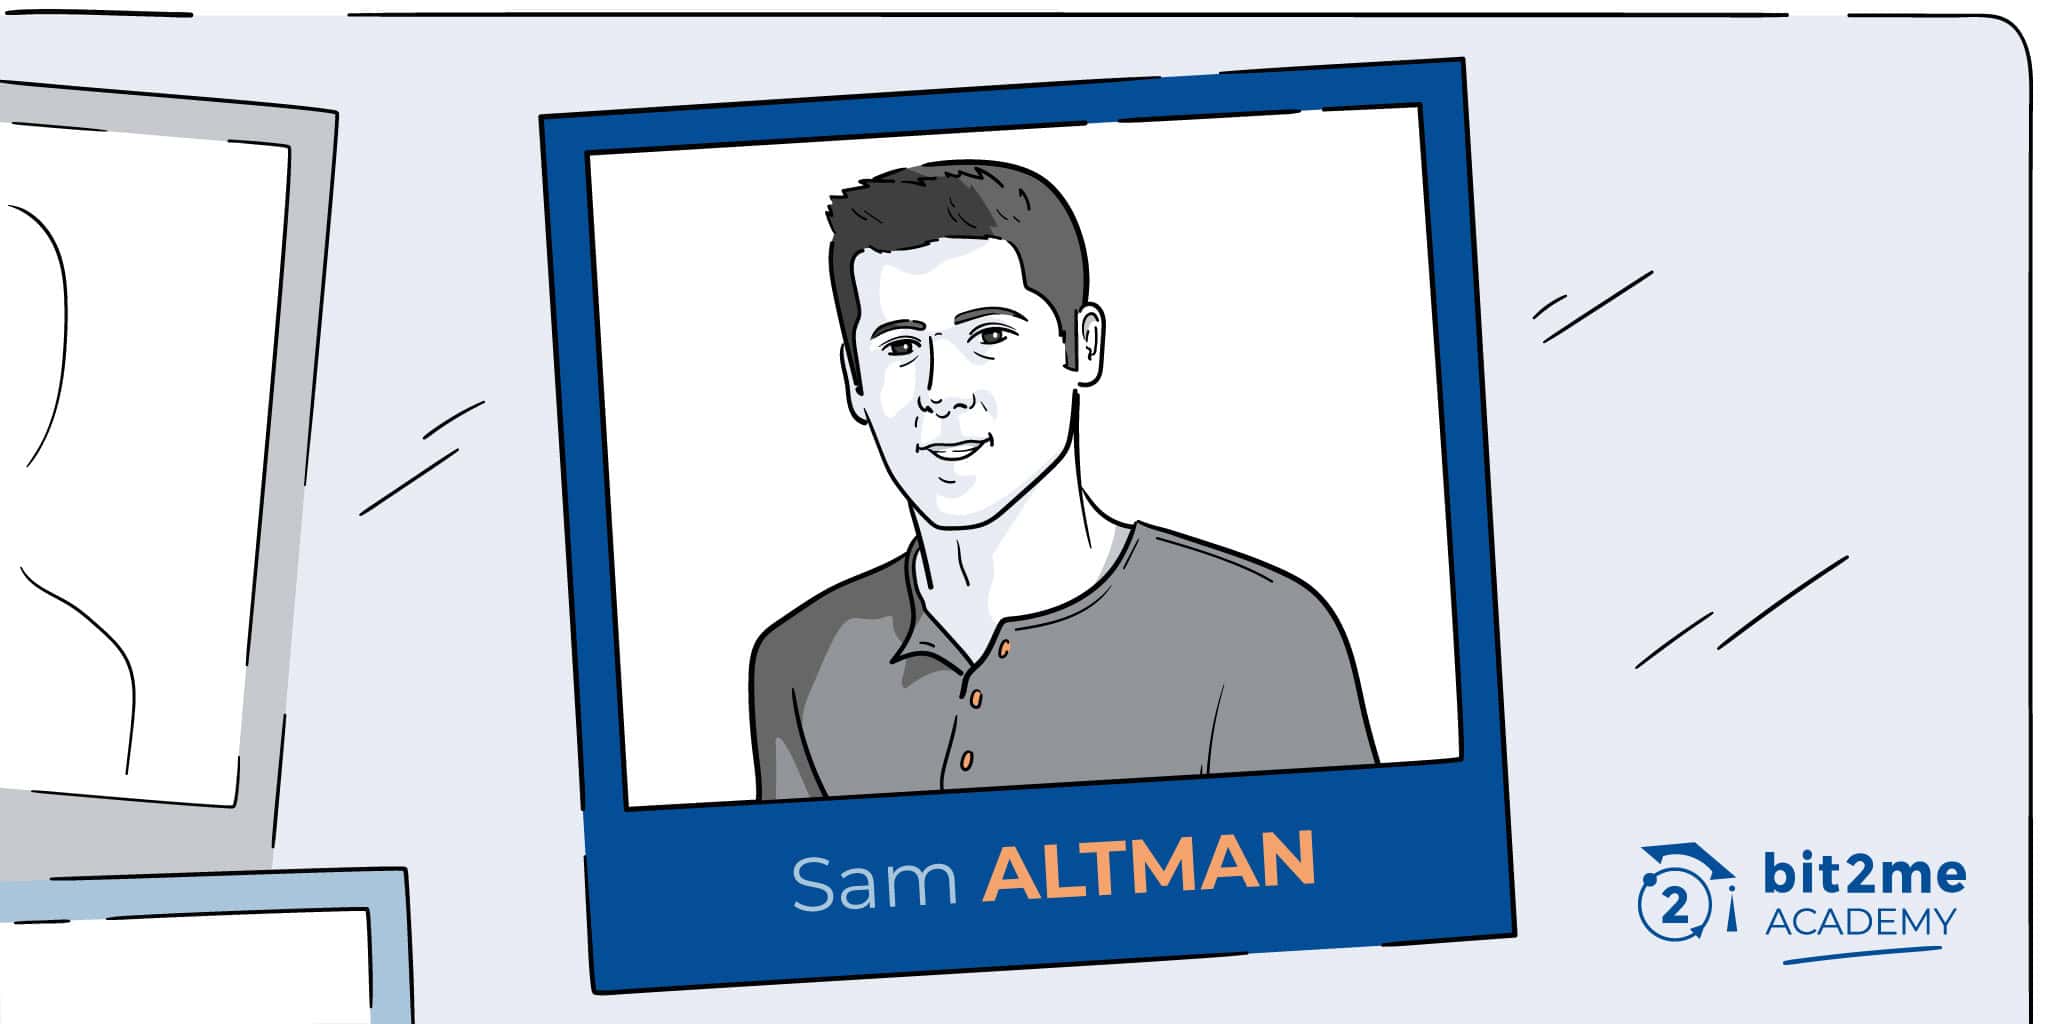 ¿Quién es Sam Altman?